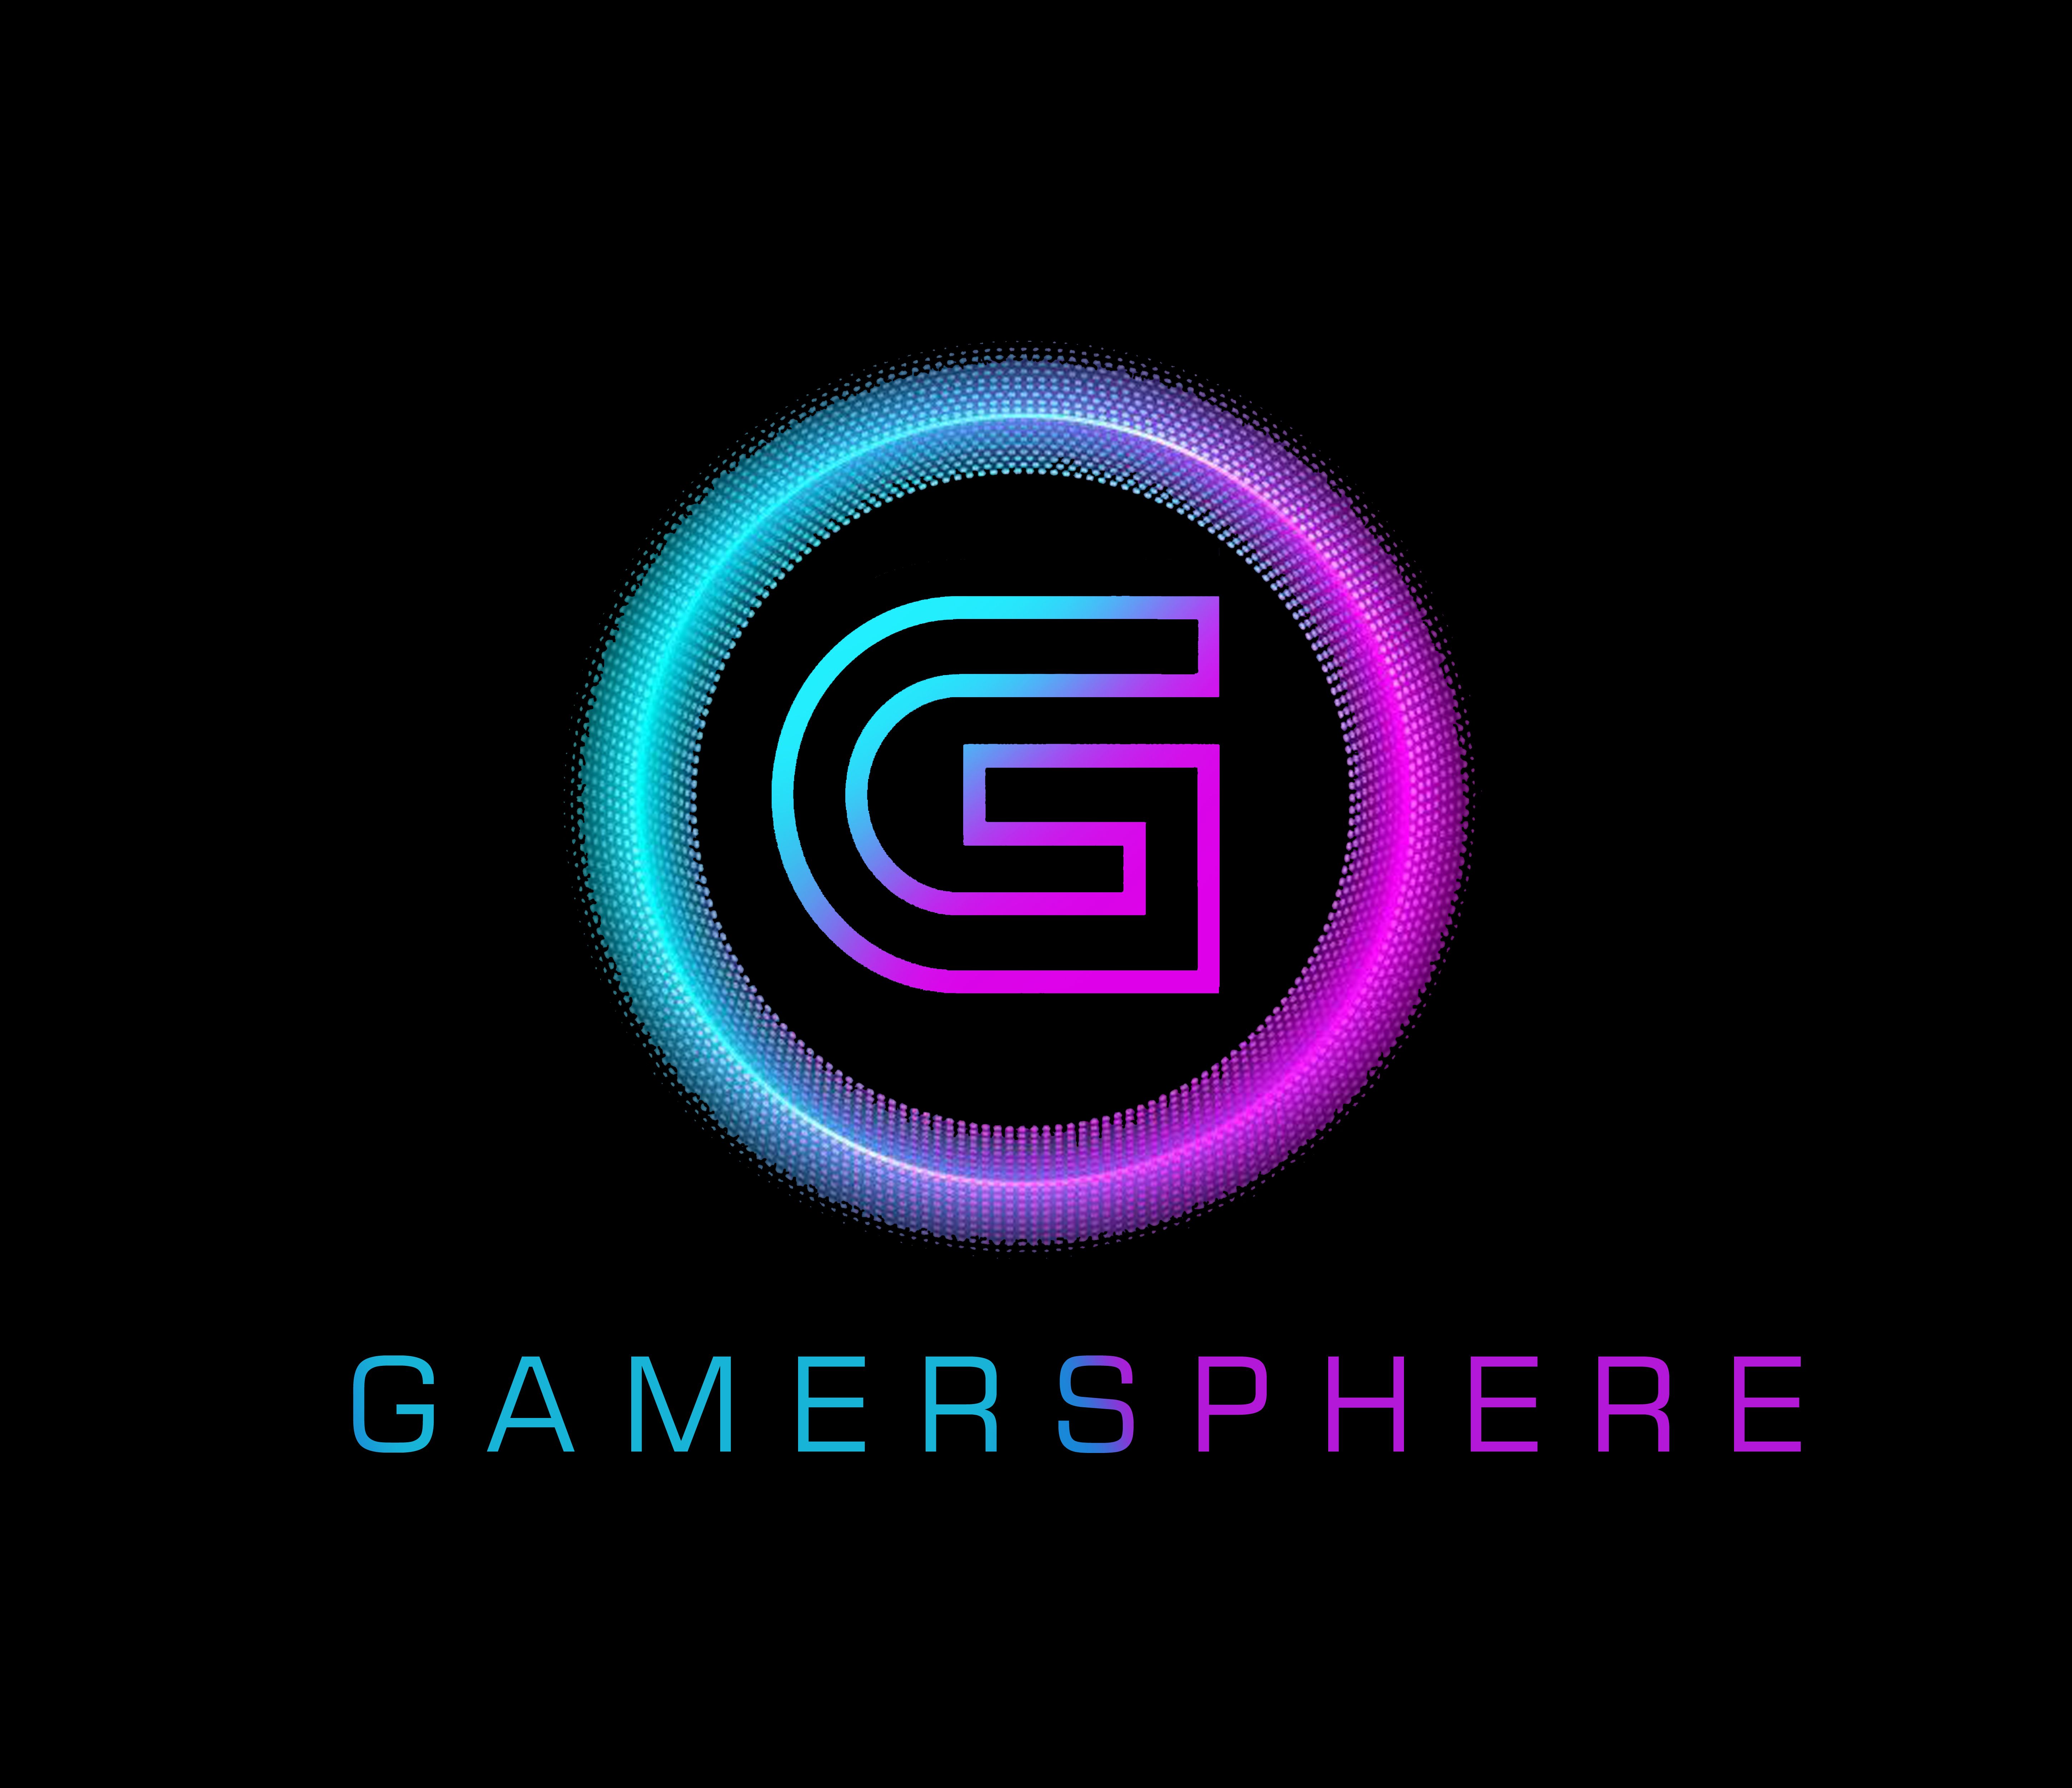 Gamersphere